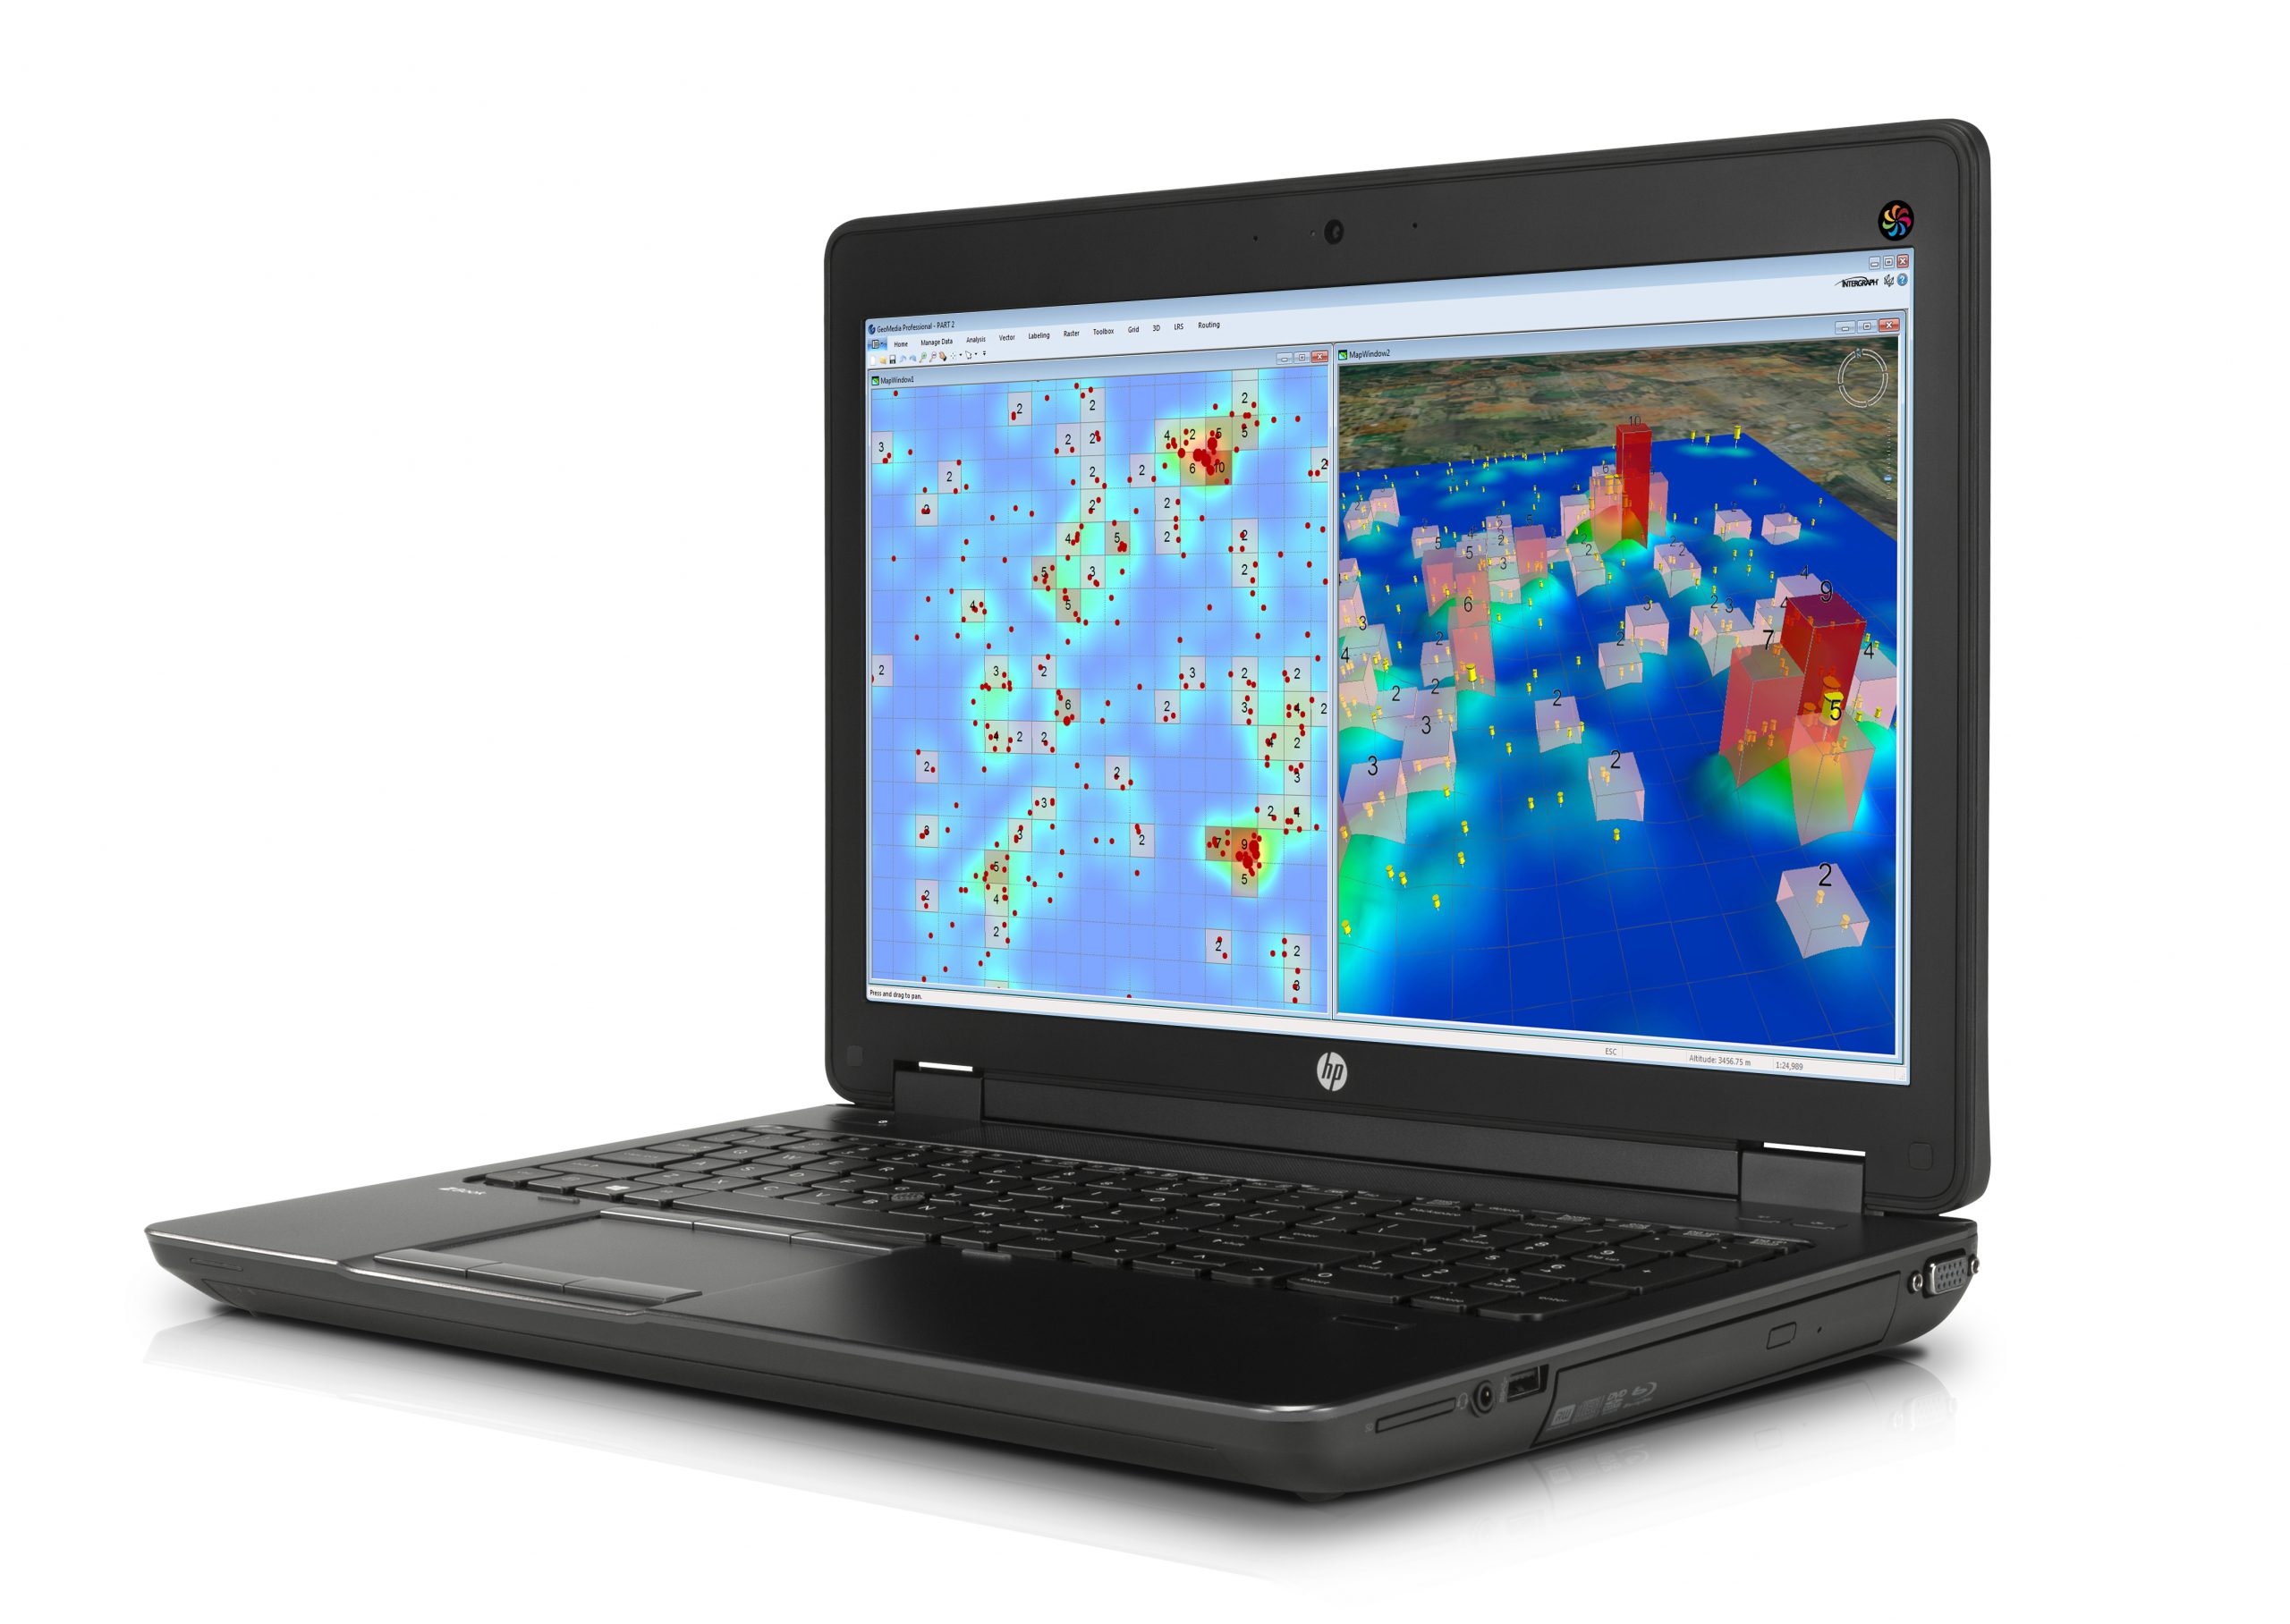 HP ZBook 15 G2 Notebook WorkStation | 15″ Pollici FullHD | Intel core i7-4810mq 2.8Ghz | 8Gb Ram | 256Gb SSD | Tastiera Italiana | Windows 10 Pro